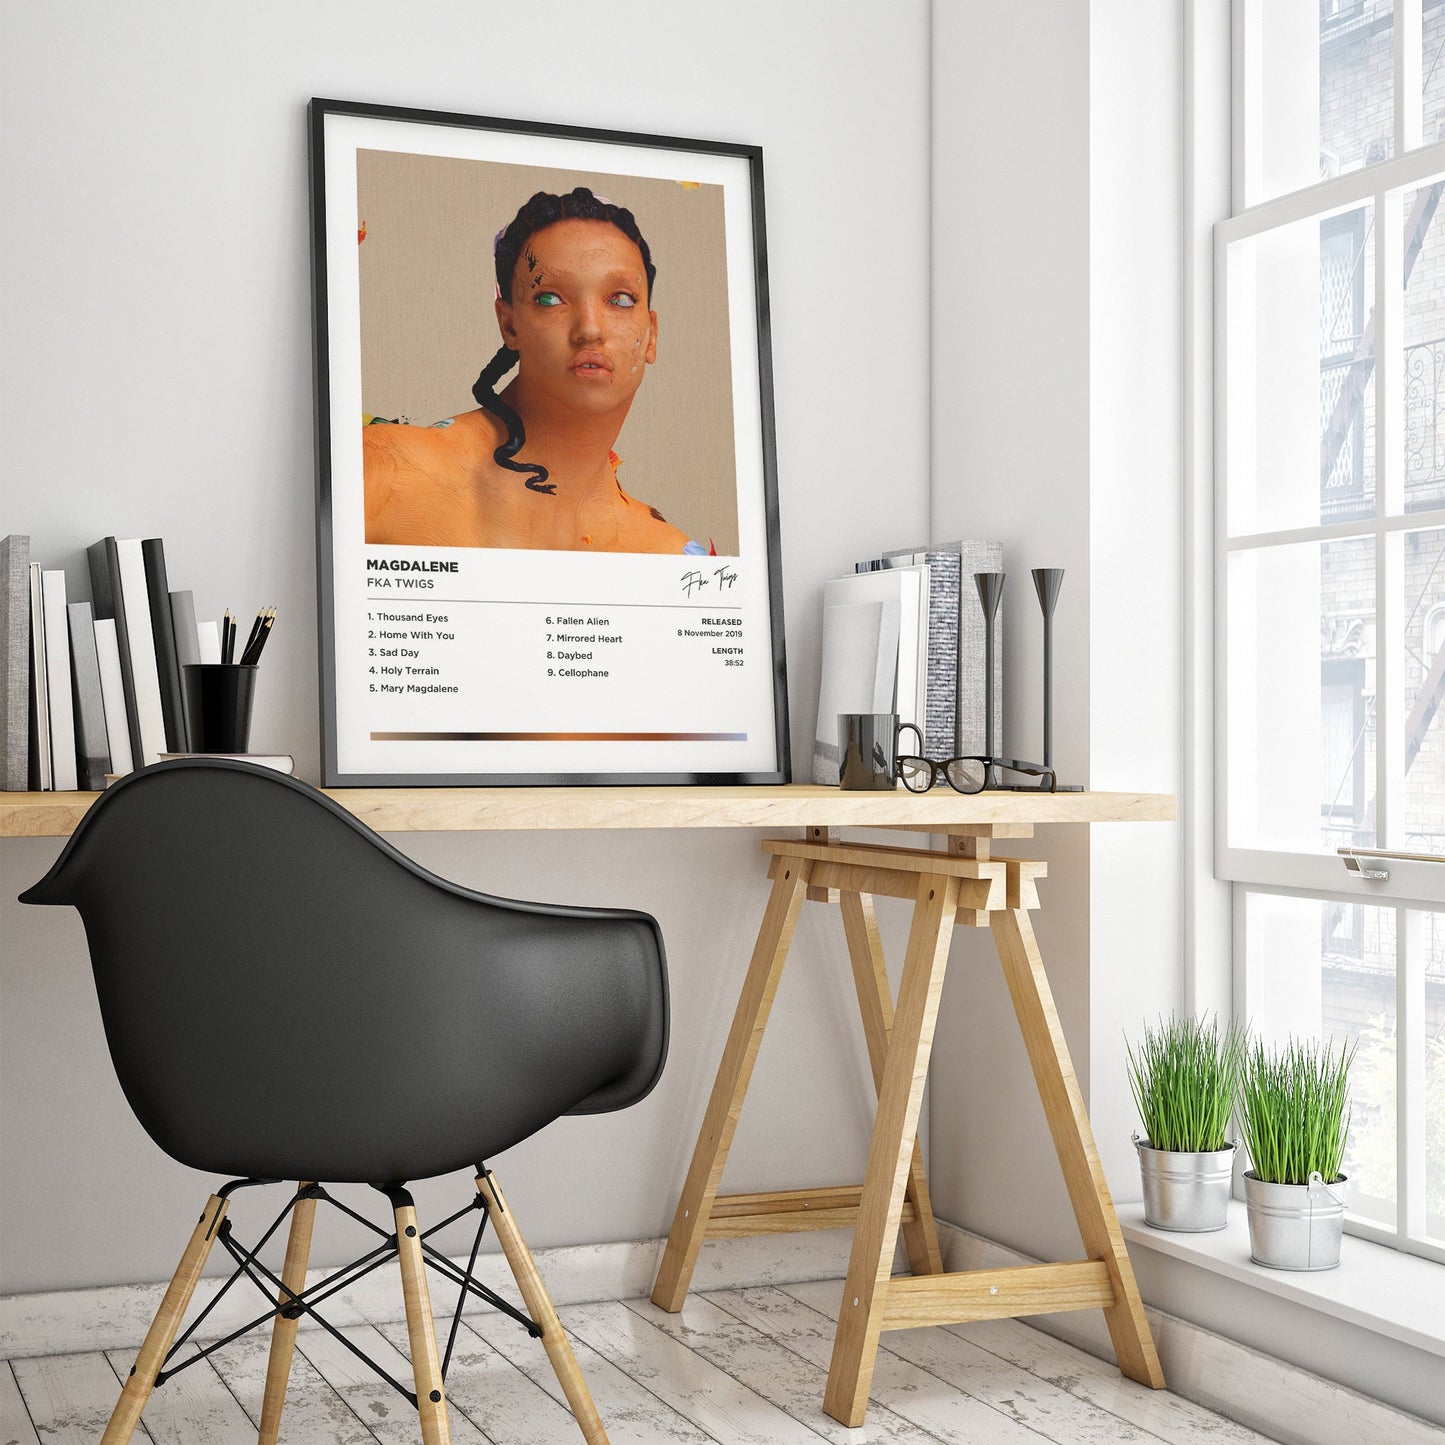 FKA Twigs - MAGDALENE Framed Poster Print | Polaroid Style | Album Cover Artwork